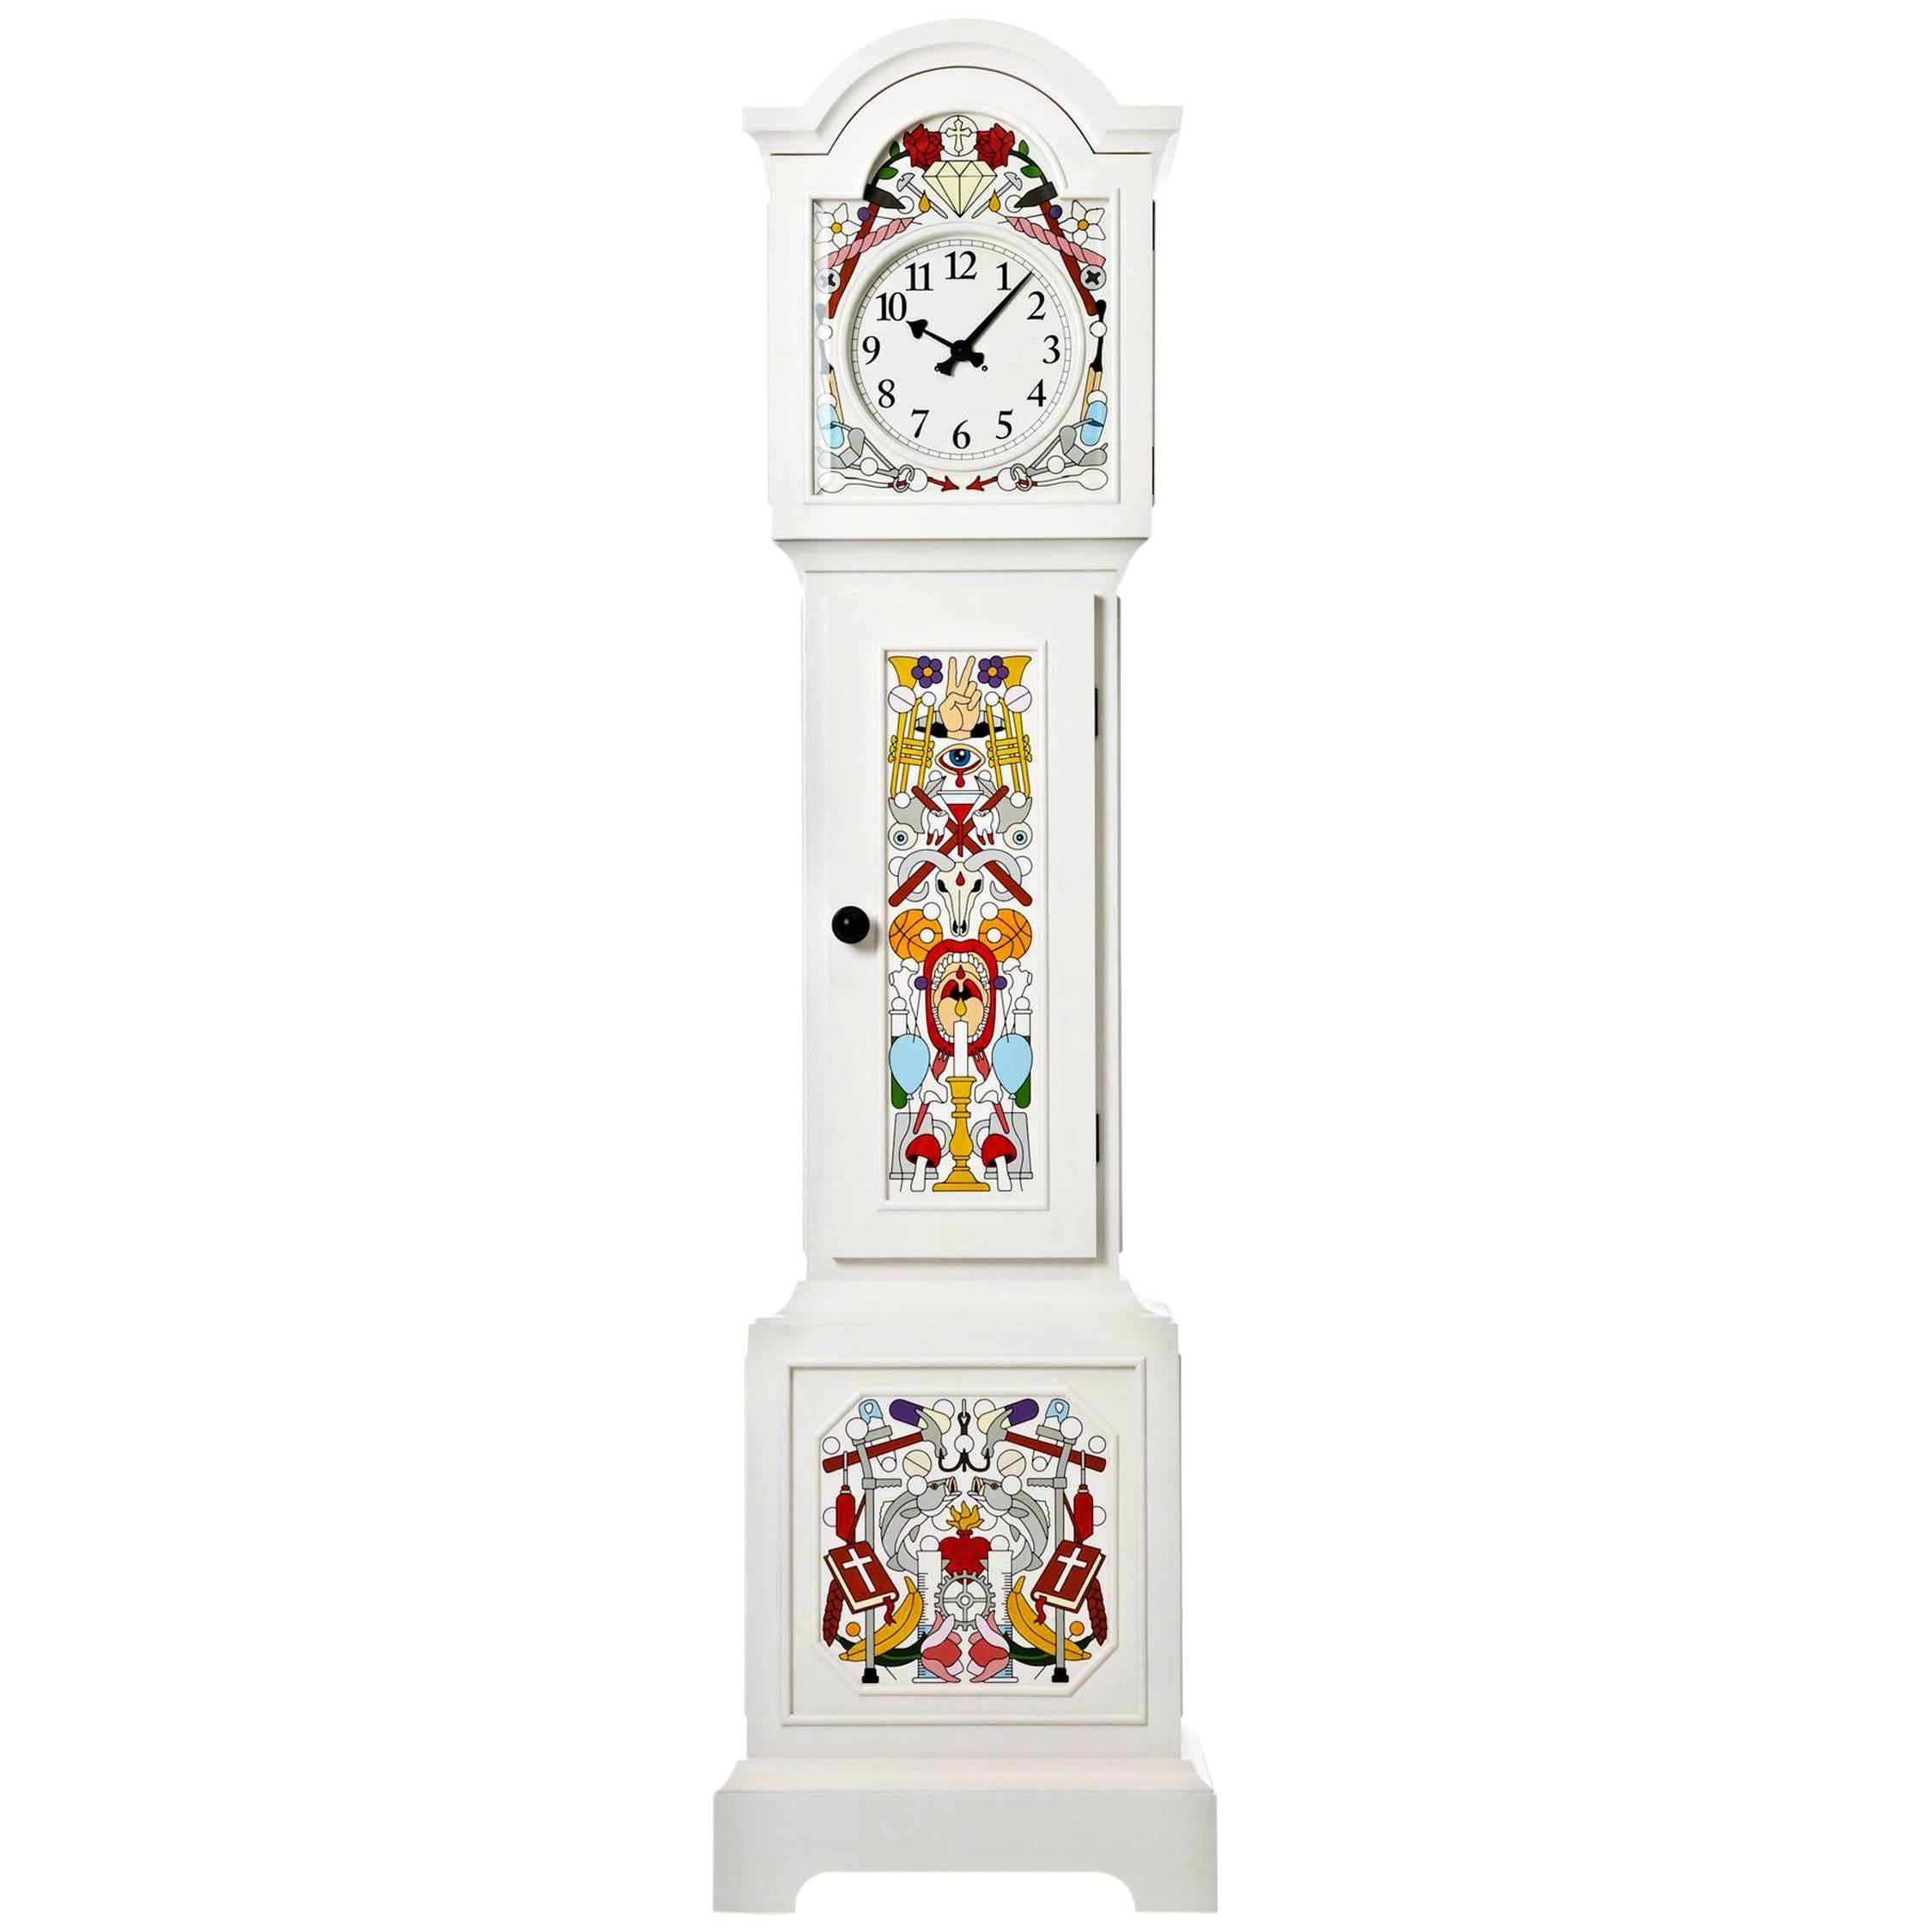 Moooi Altdeutsche Clock by Studio Job For Sale